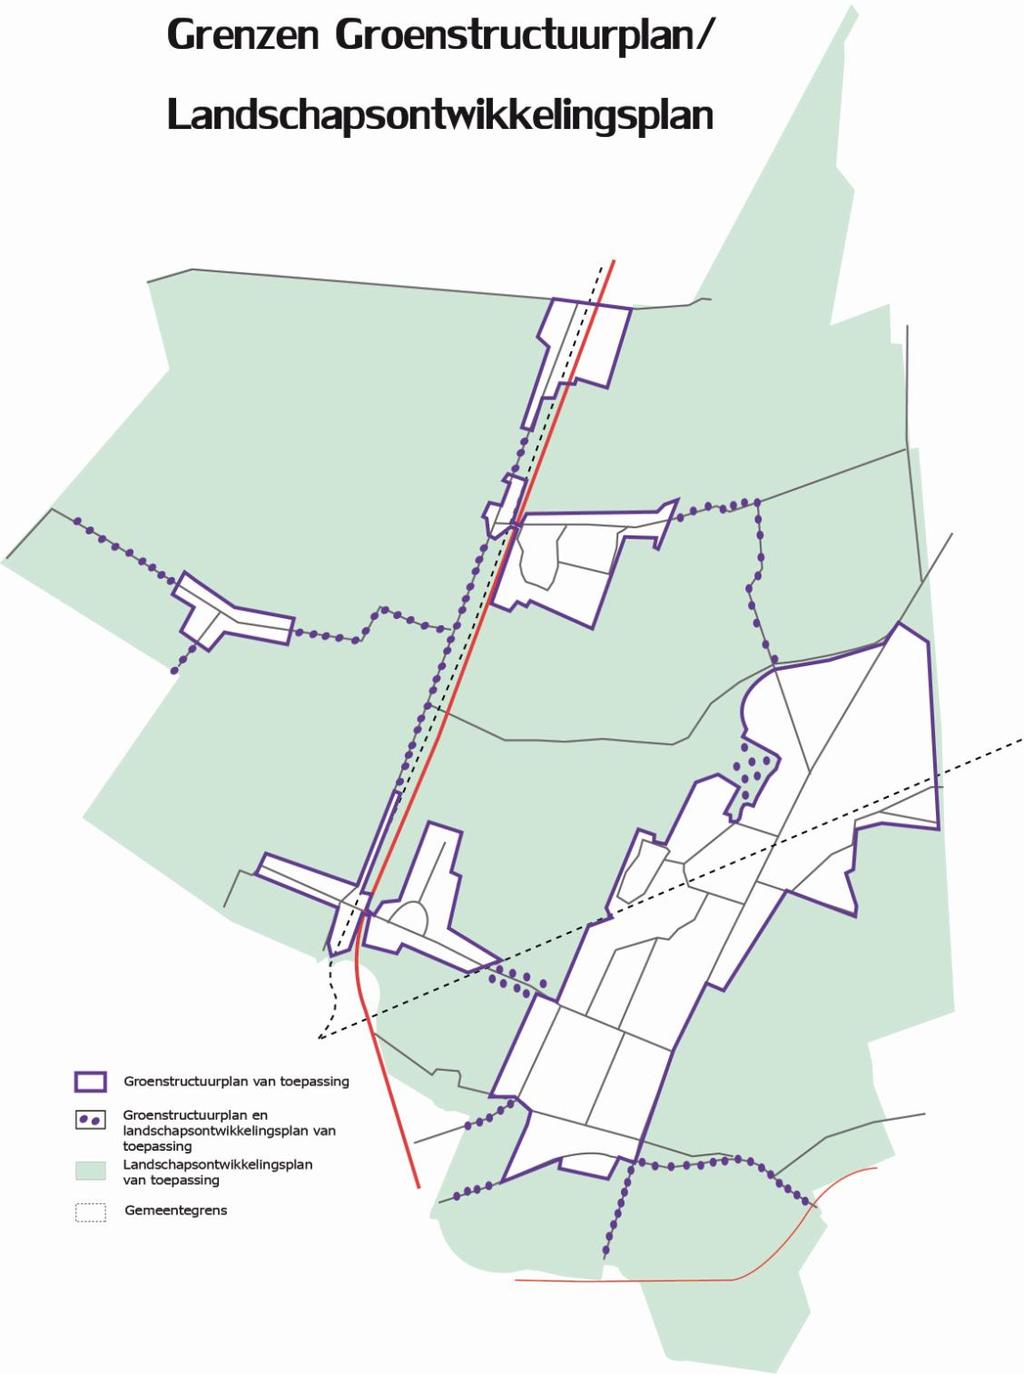 1.3 Afbakening Naast het groenstructuurplan, is voor de gemeente De Bilt een landschapsontwikkelingsplan opgesteld.